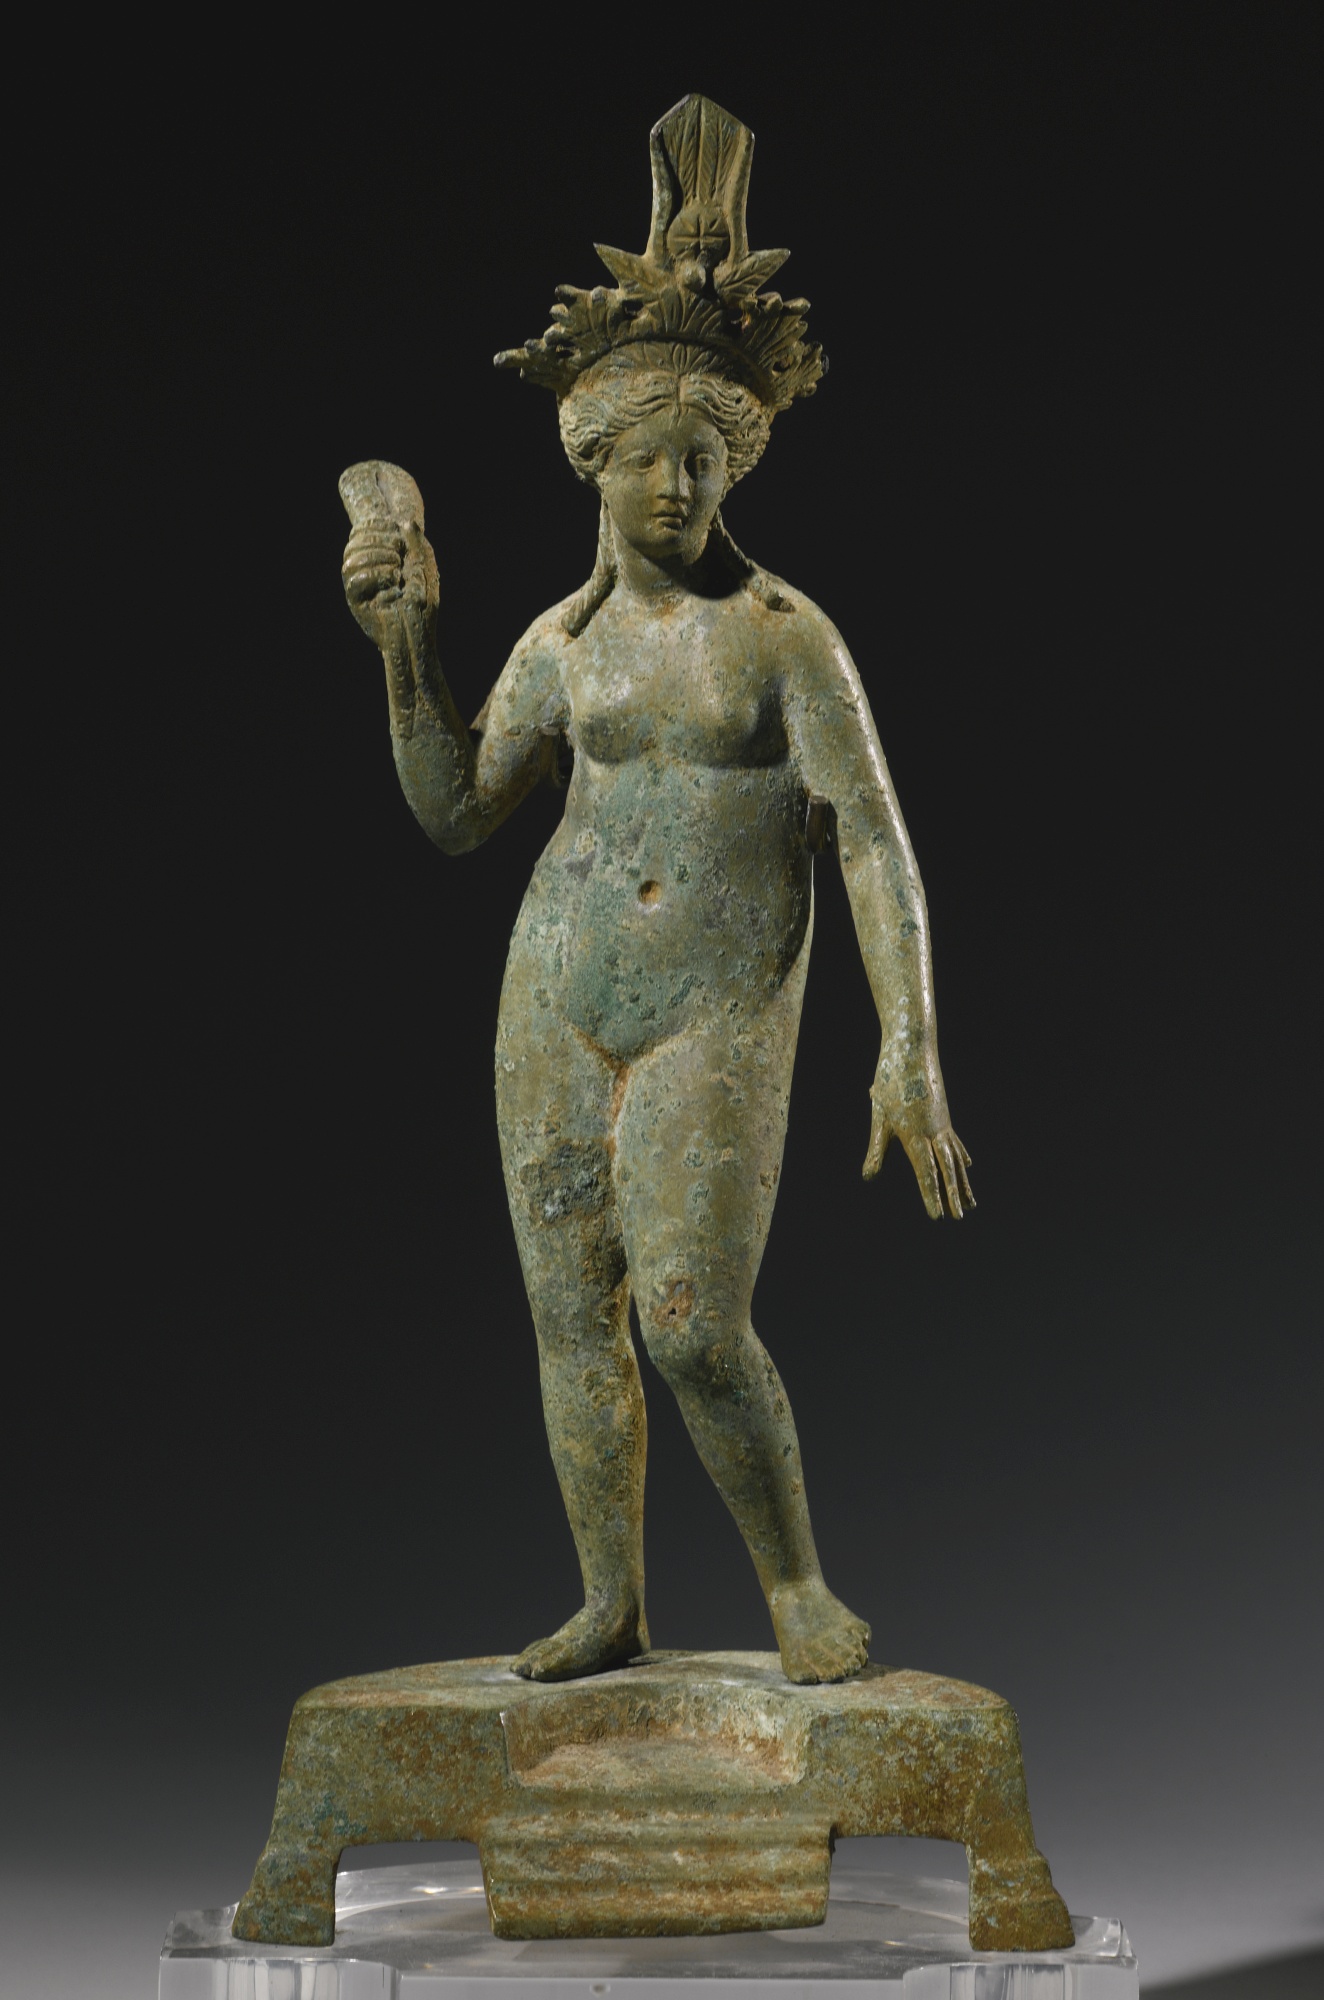 3r - Inanna depicted many ways